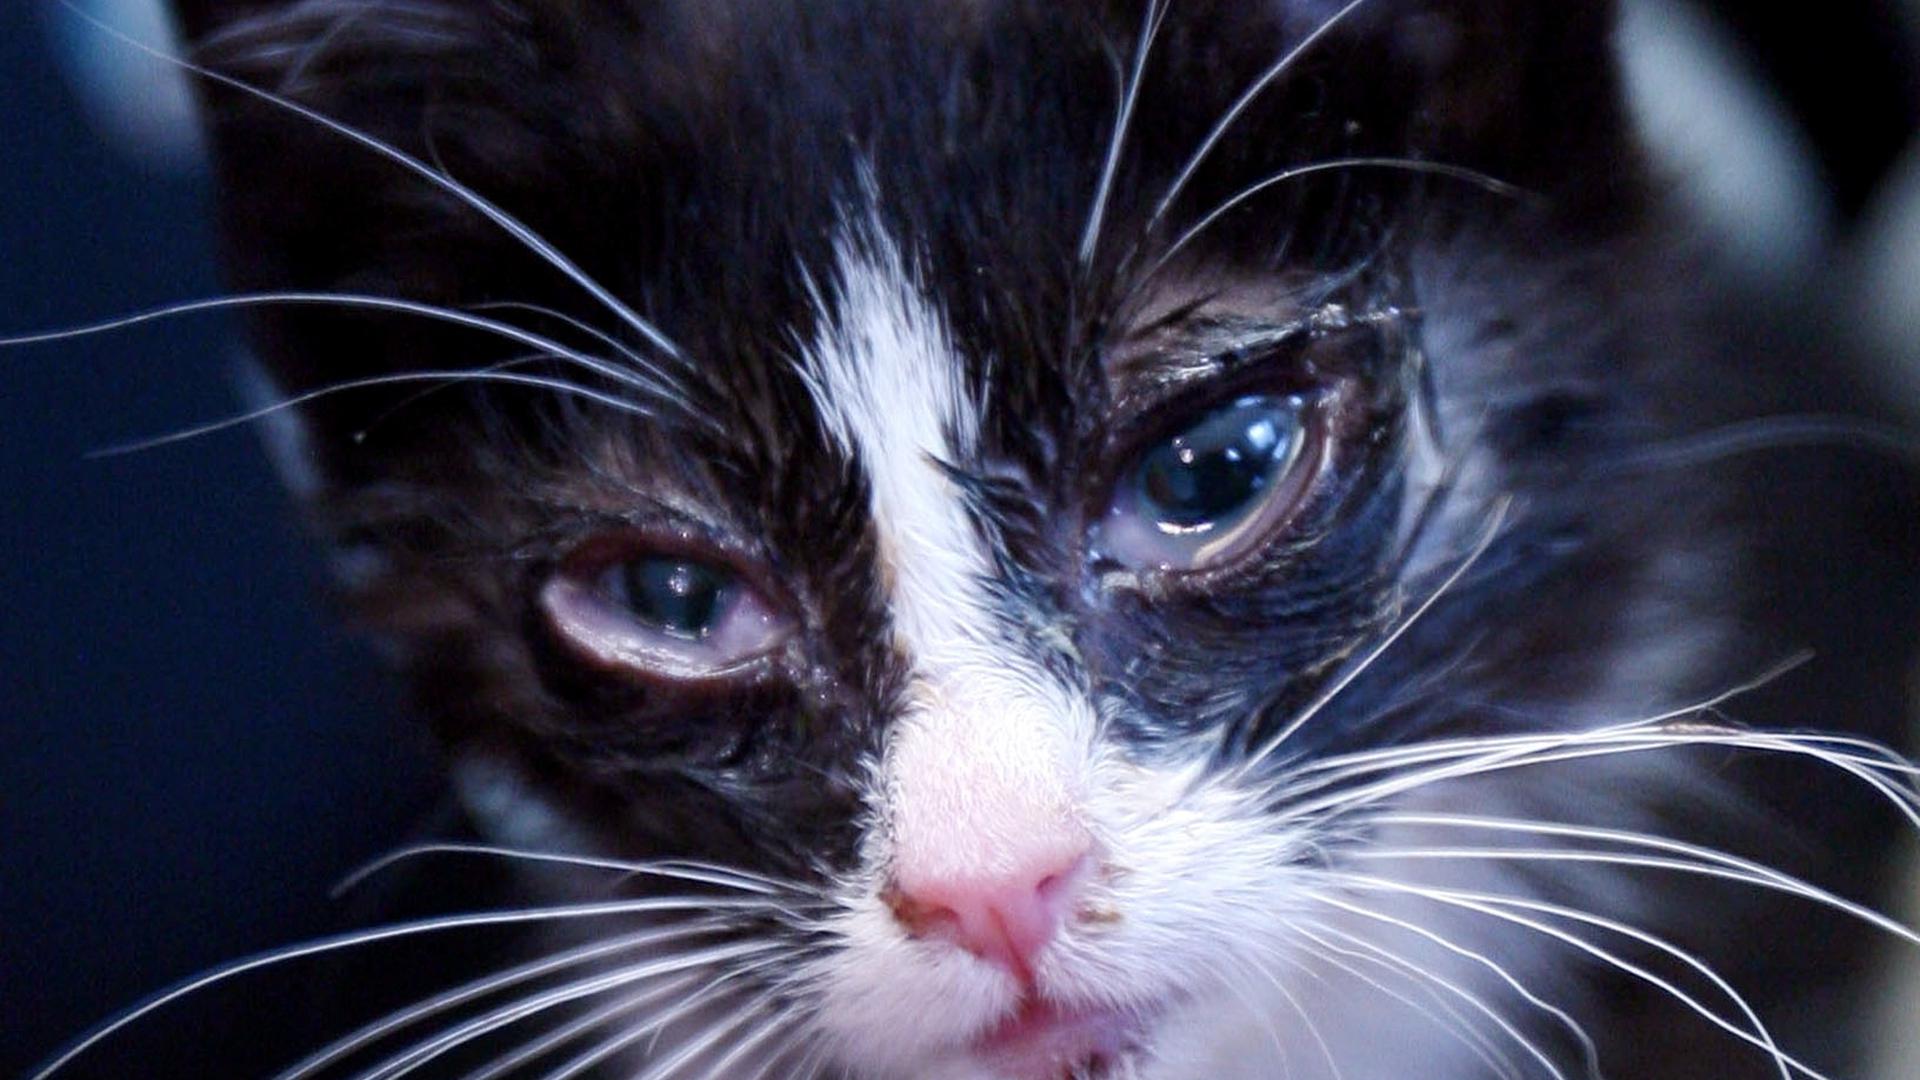 Eine ausgesetzte Katze, die abgemagert und an Katzenschnupfen erkrankt ist (Foto vom 09.08.2009).  